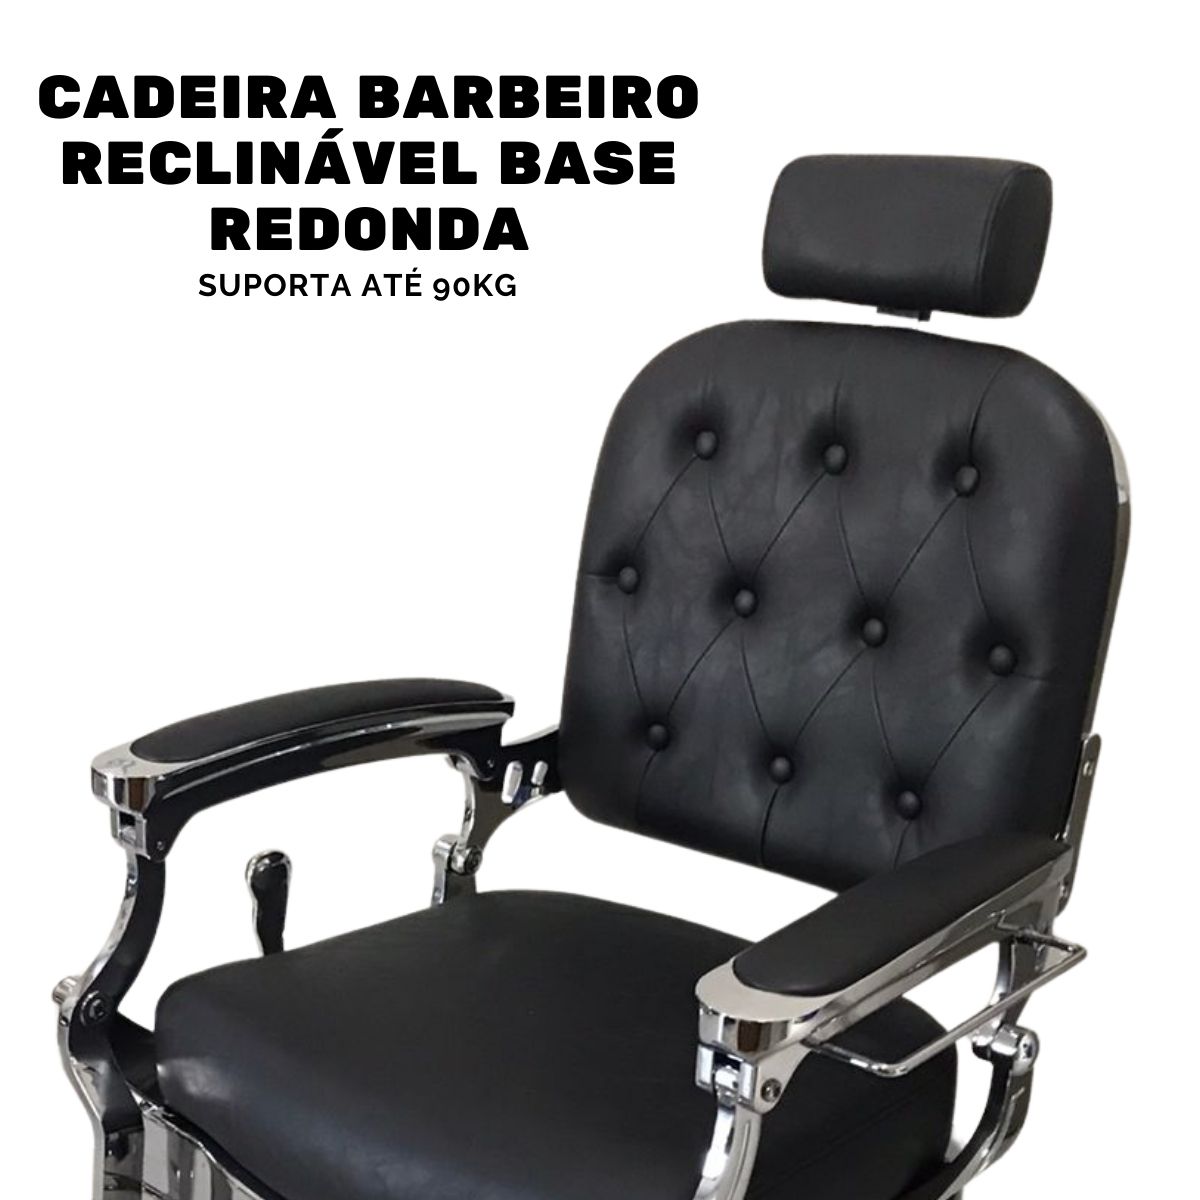 Cadeira Barbeiro Reclinável Base Redonda Preto IWCBRBR003